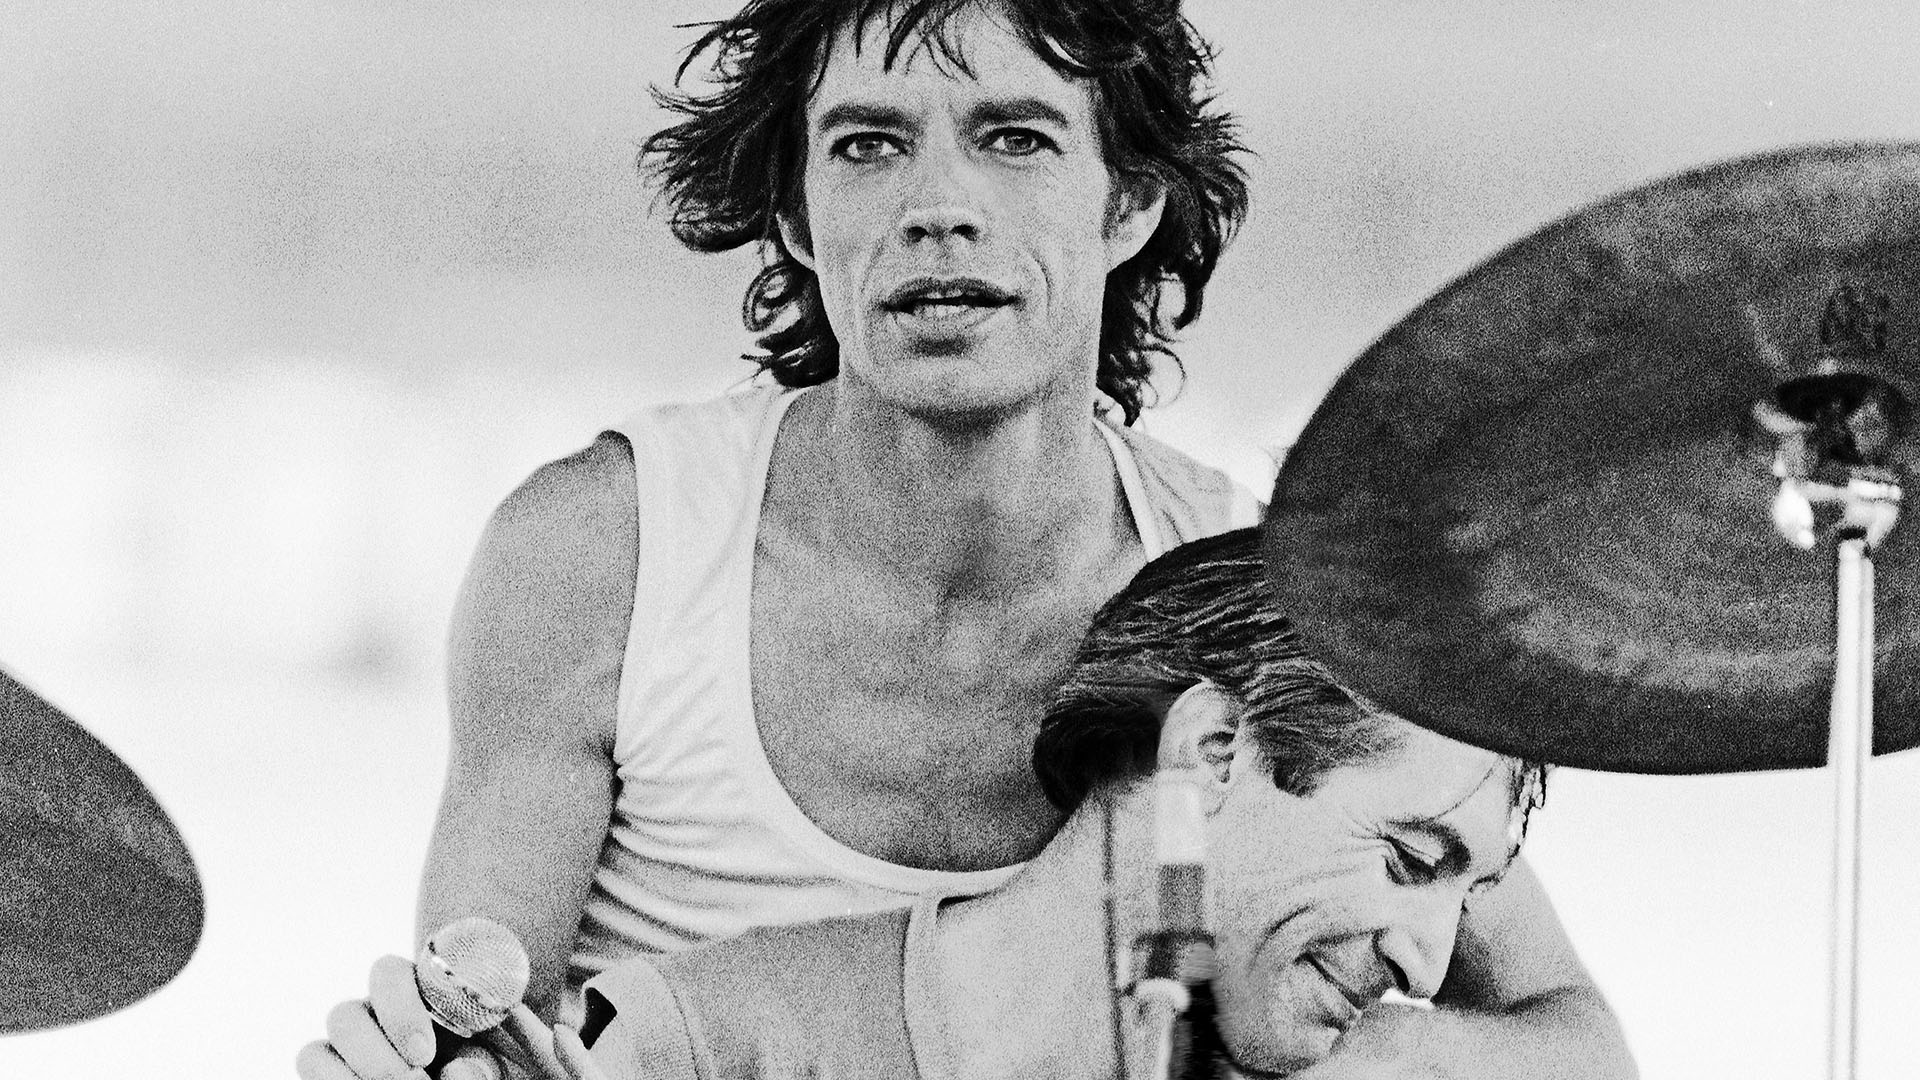 Los mensajes que compartieron Mick Jagger y Keith Richards tras la muerte de Charlie Watts